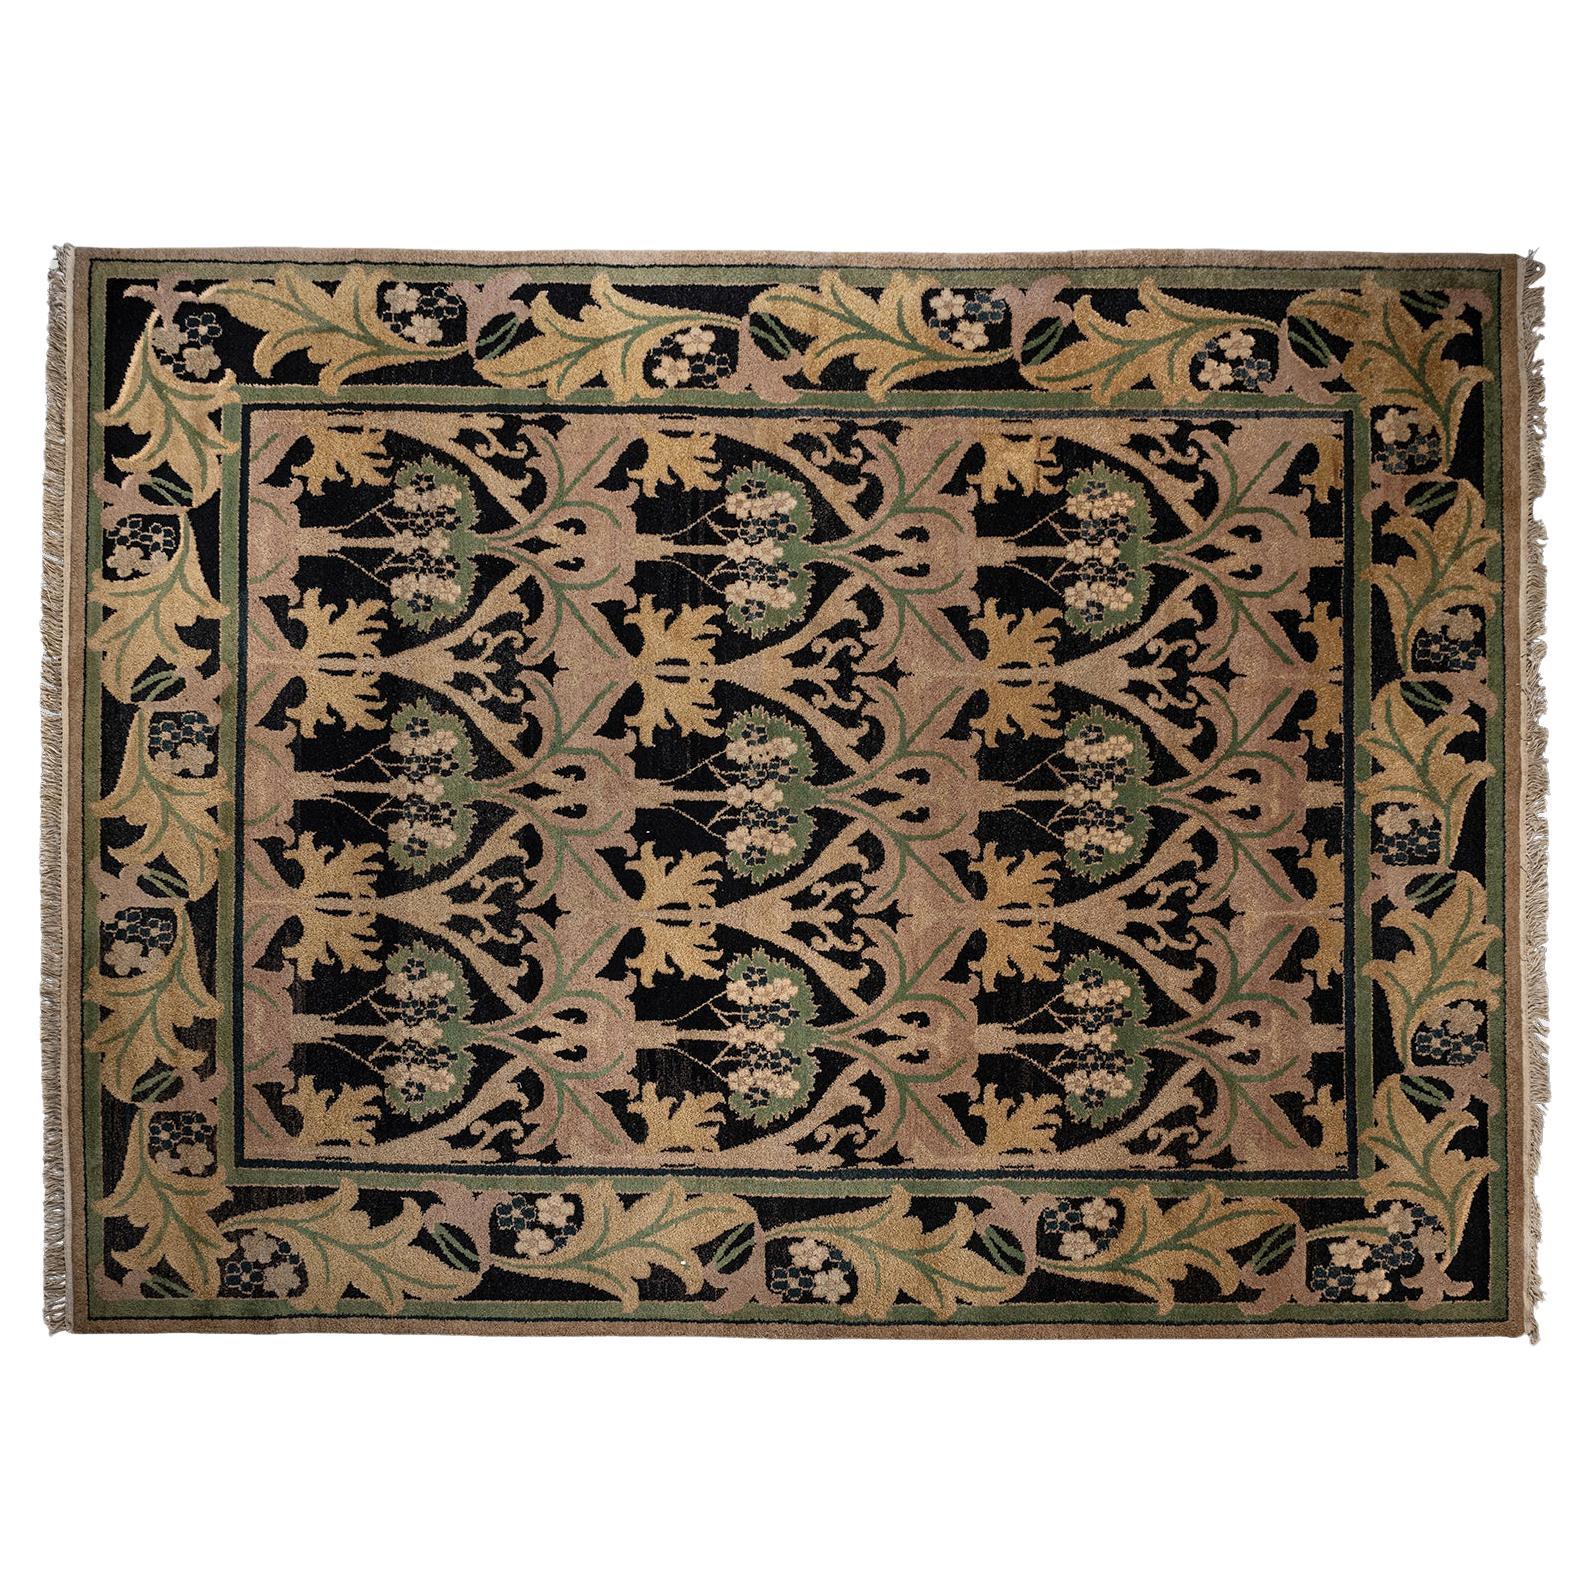 Art Nouveau Carpet in the Style of William Morris, America circa 21st Century